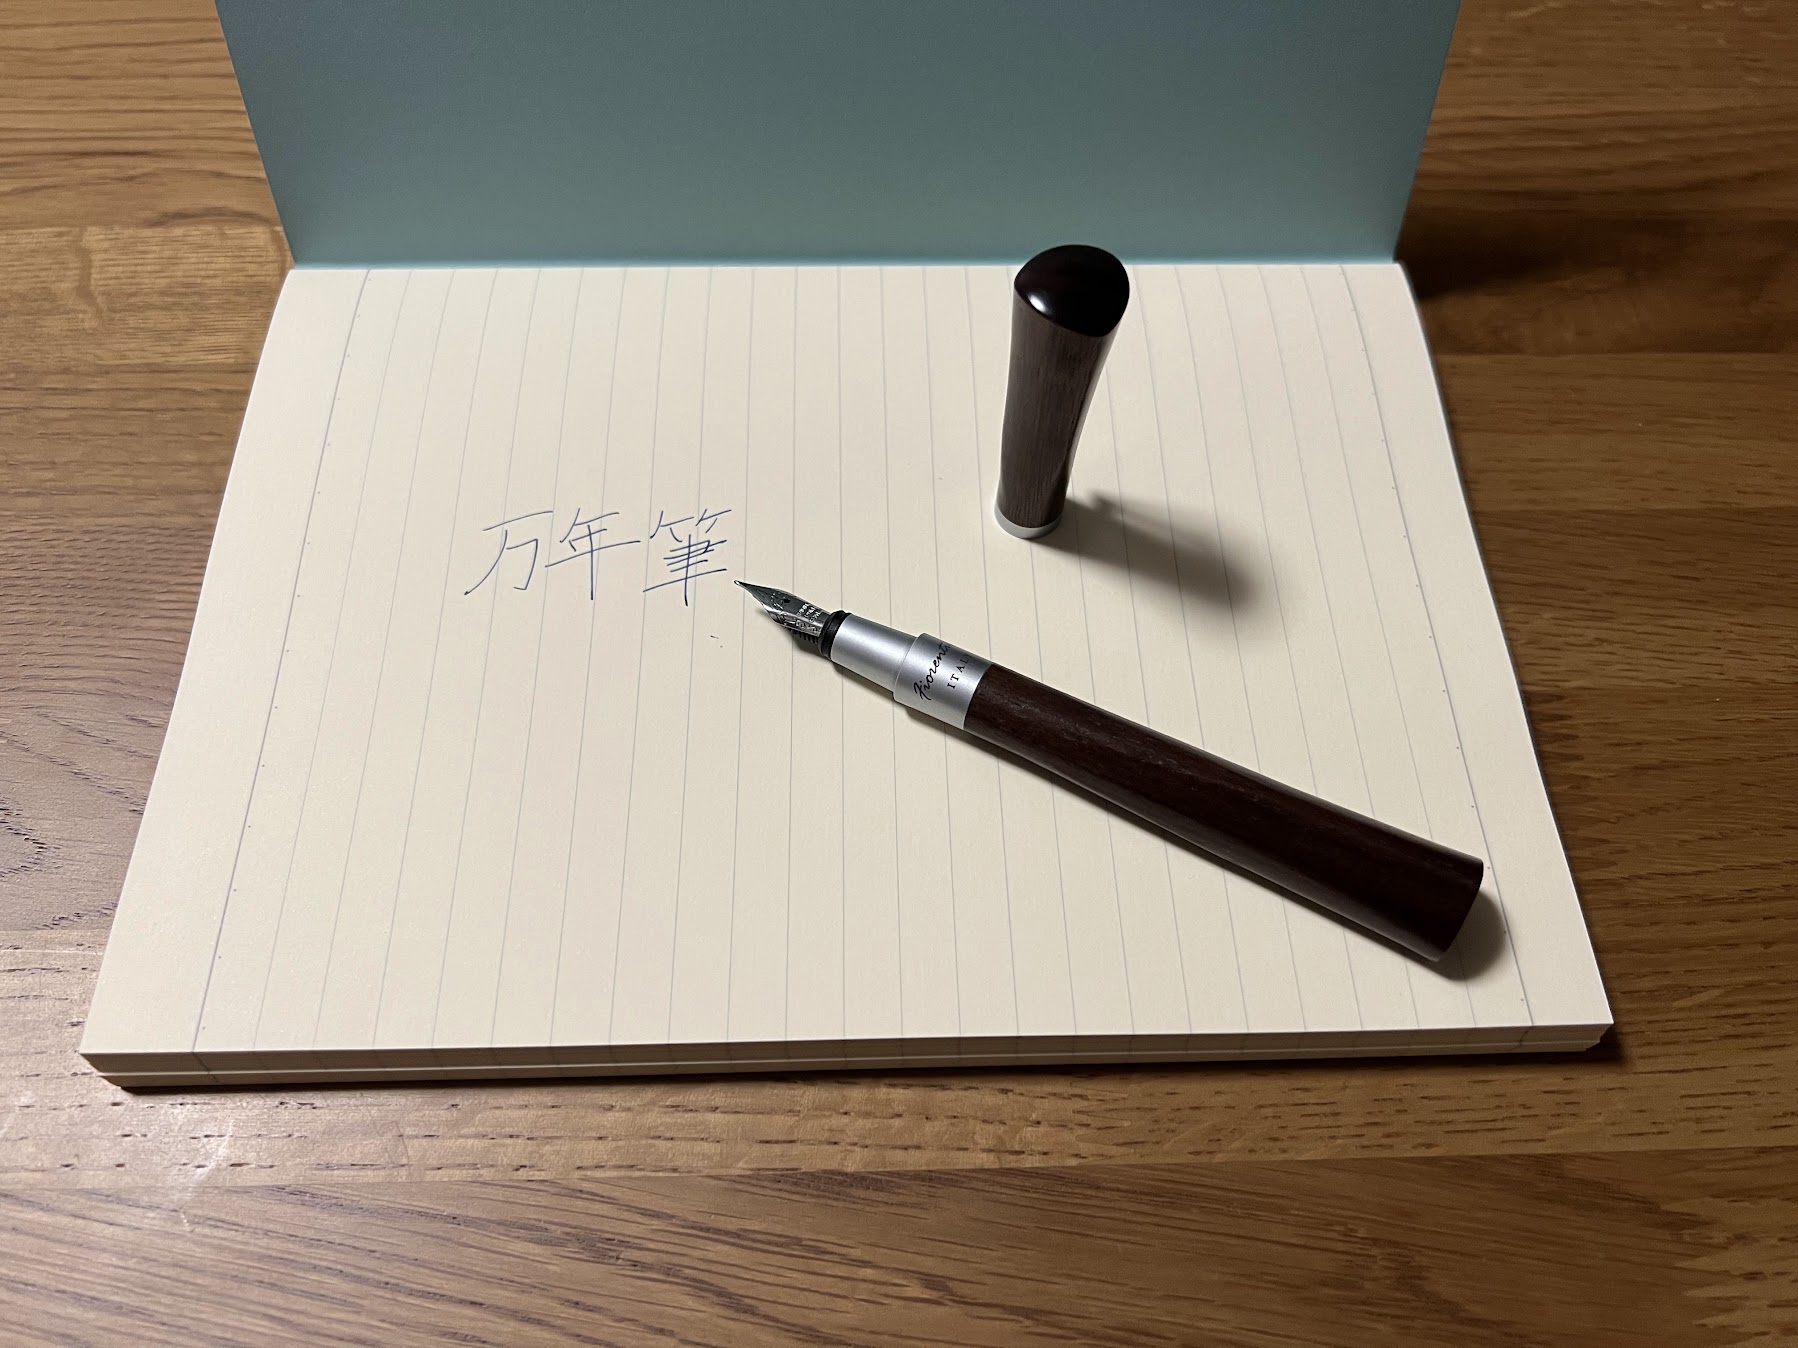 ライフ製のノートとFiorentina社の万年筆。インクはHERBIN社製。